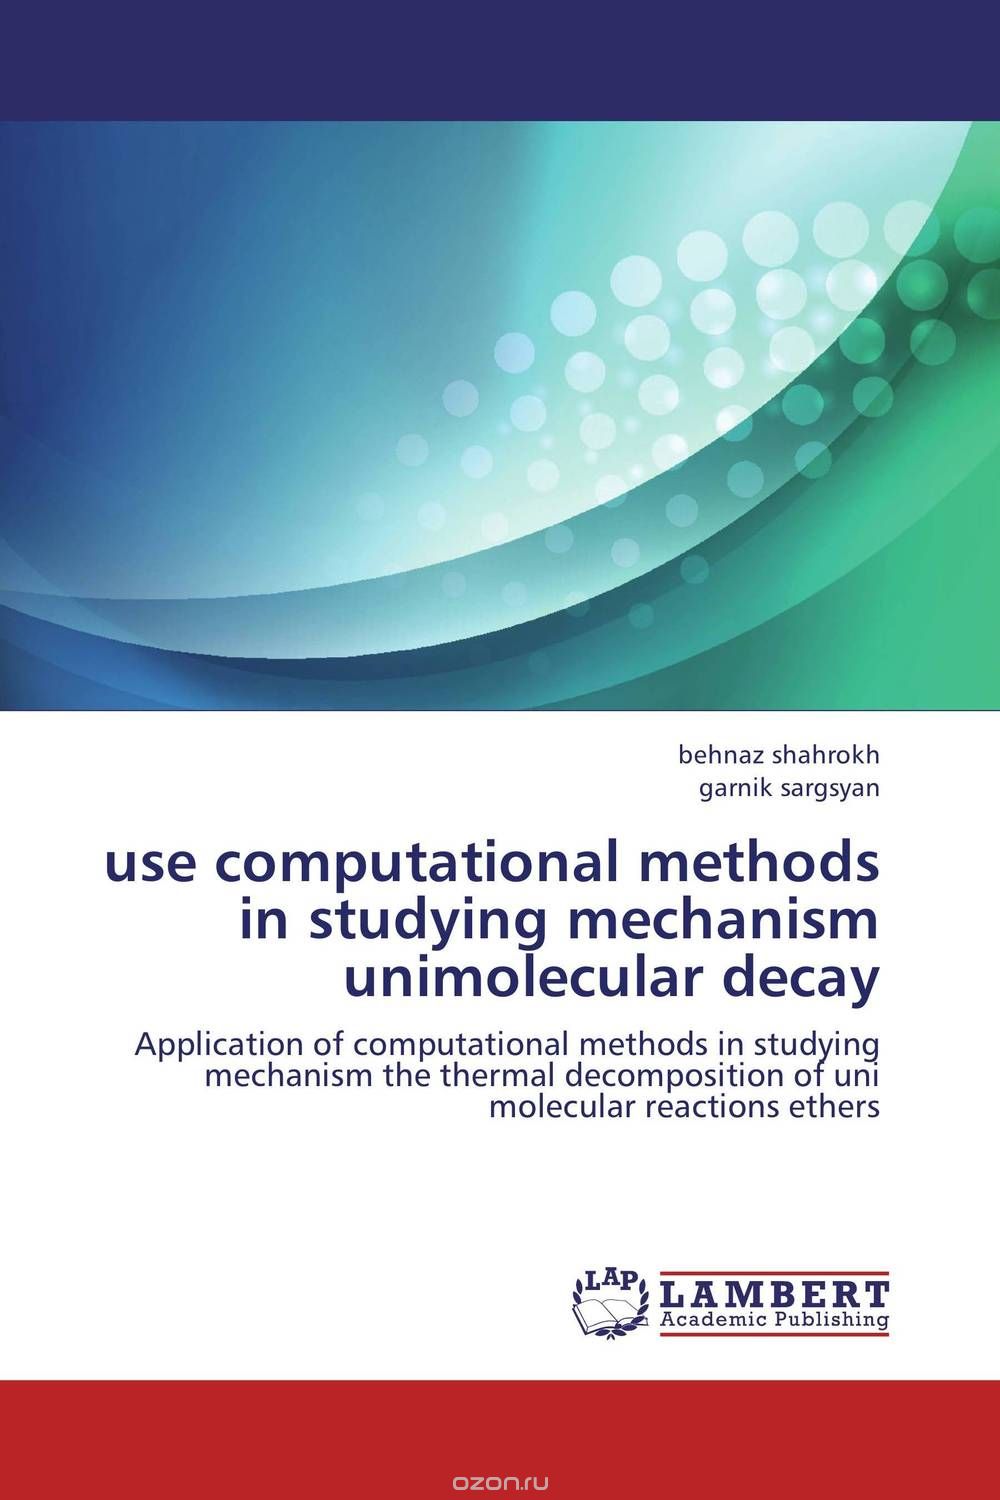 Скачать книгу "Use computational methods in studying mechanism  unimolecular decay"